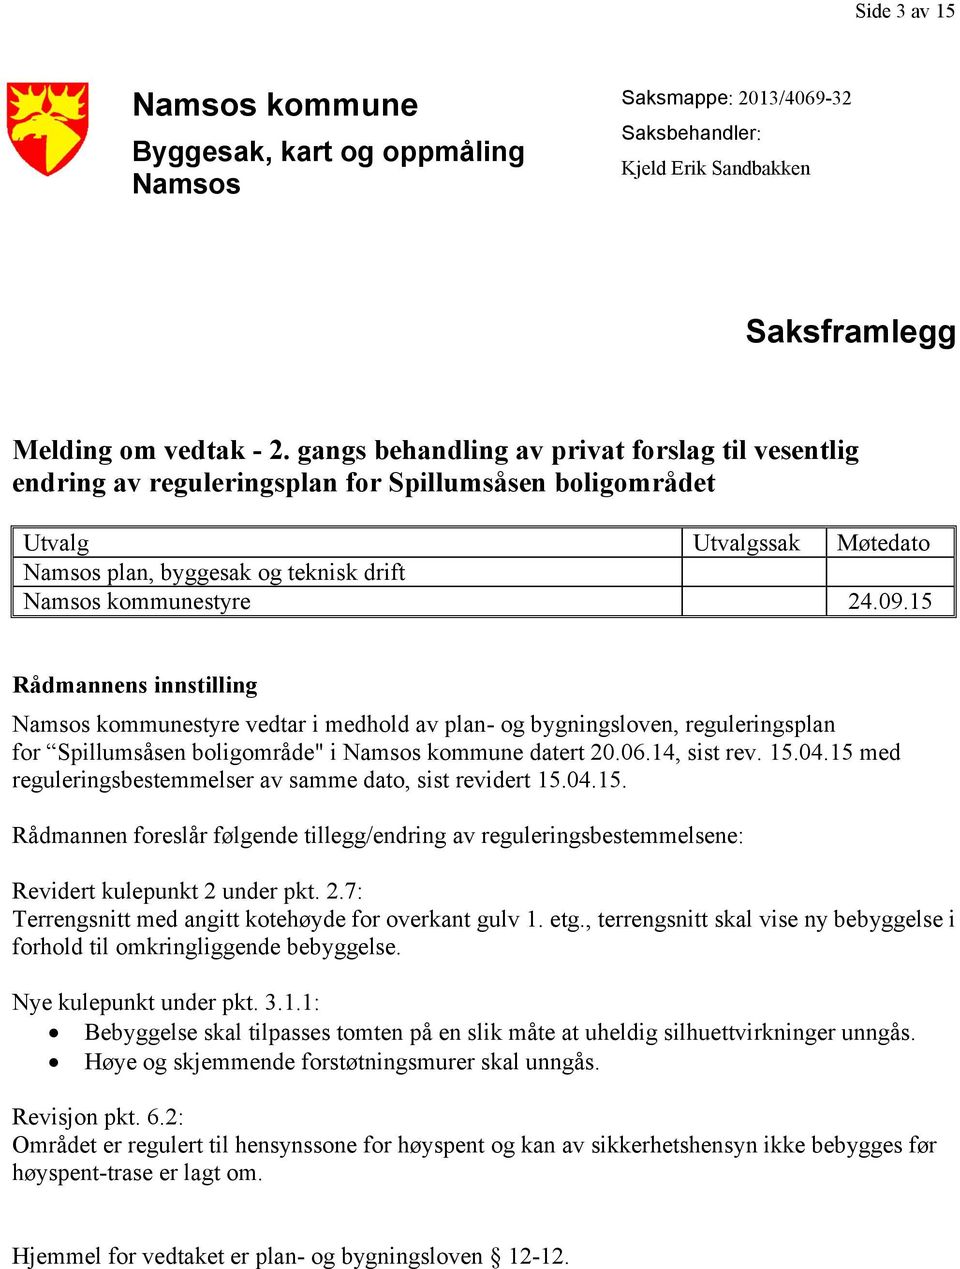 15 Rådmannens innstilling Namsos kommunestyre vedtar i medhold av plan- og bygningsloven, reguleringsplan for Spillumsåsen boligområde" i Namsos kommune datert 20.06.14, sist rev. 15.04.